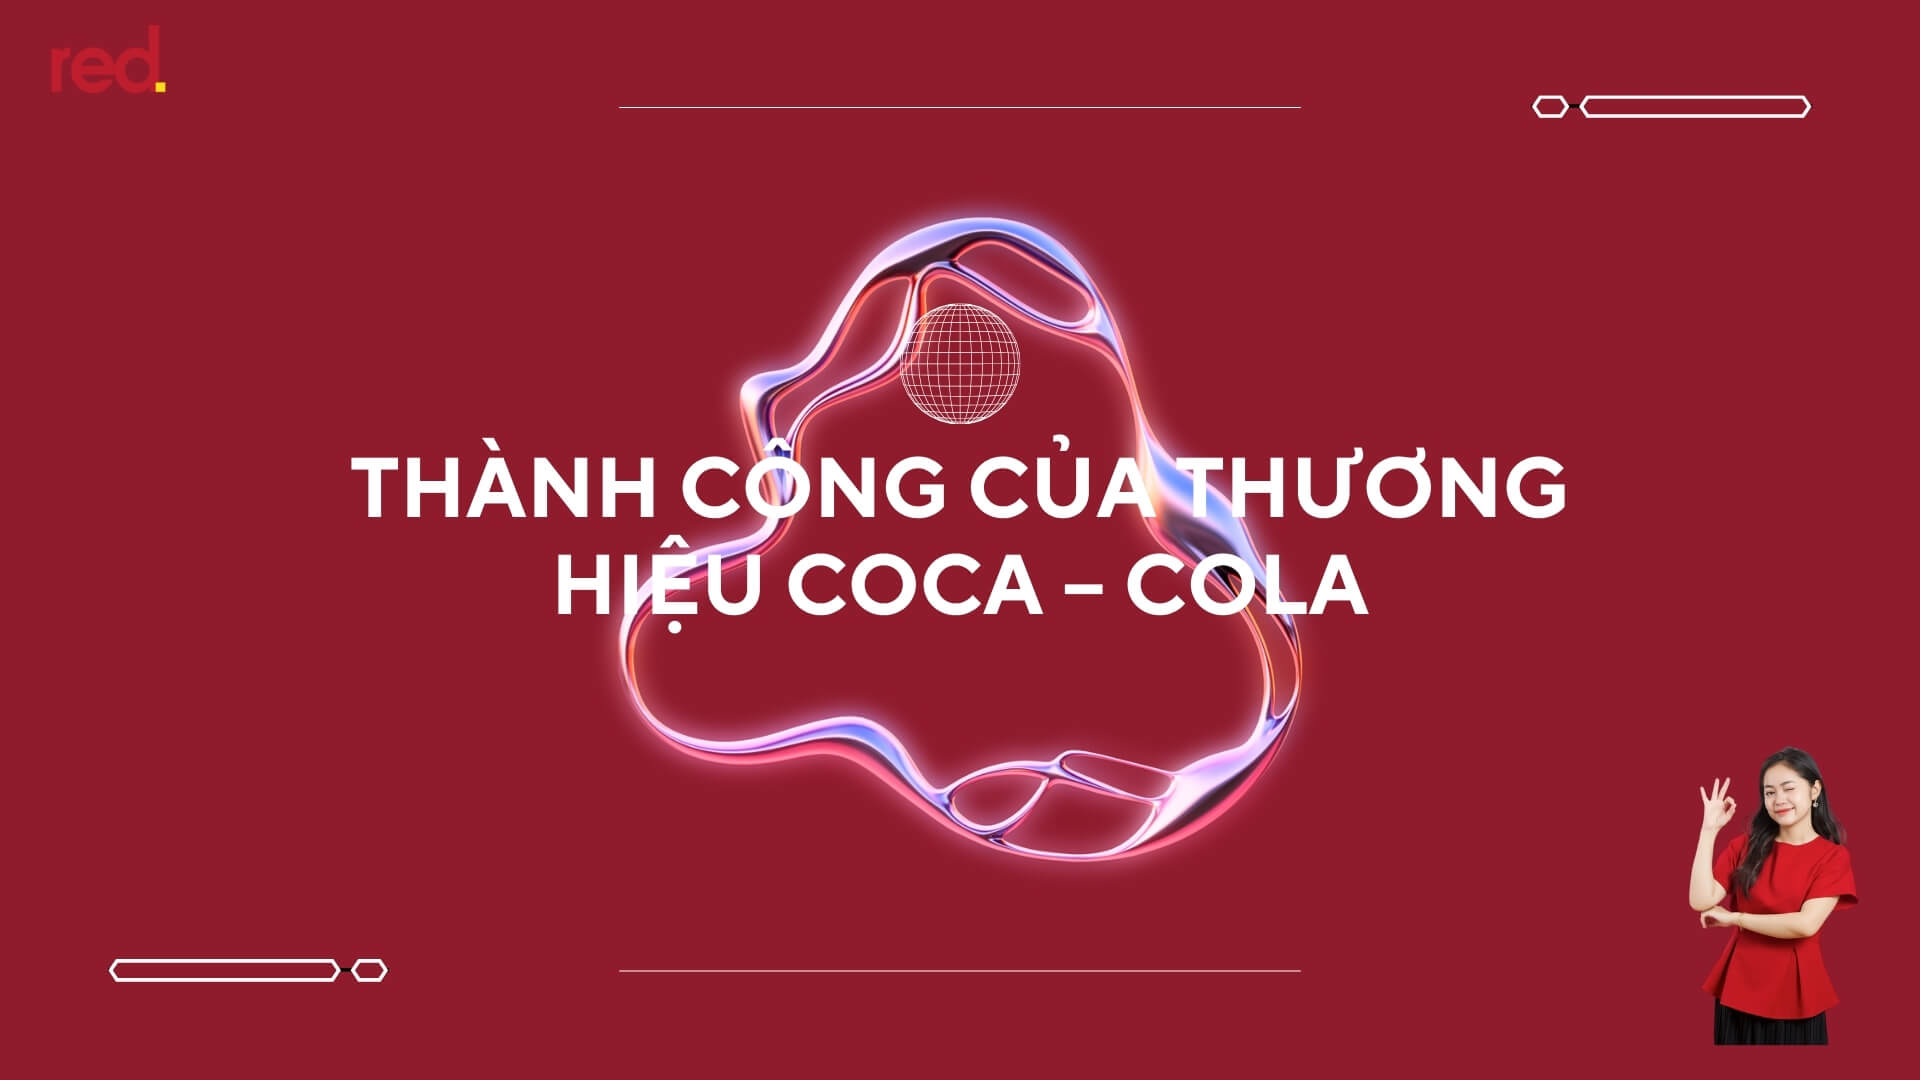 Thành công của thương hiệu Coca – cola